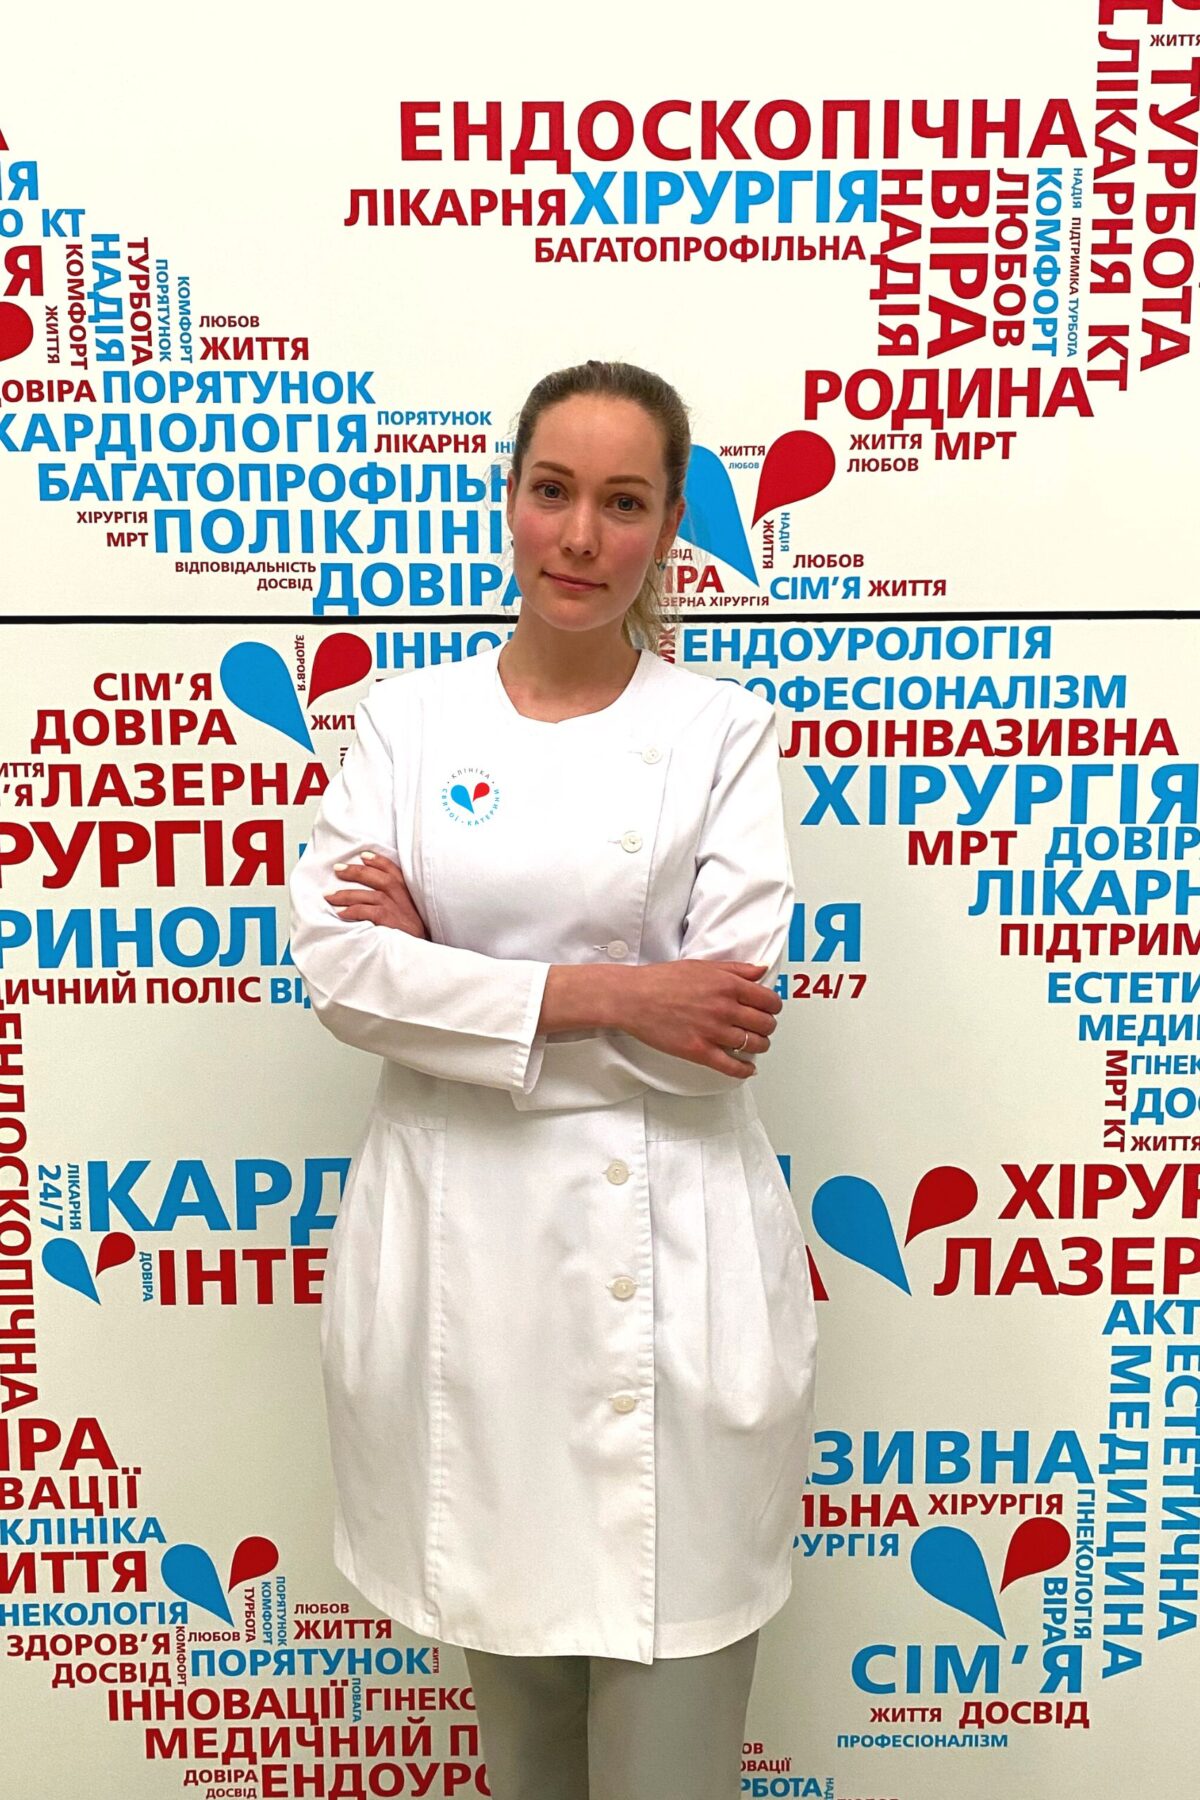 Максимчук Ганна Іванівна - 15 - svekaterina.ua